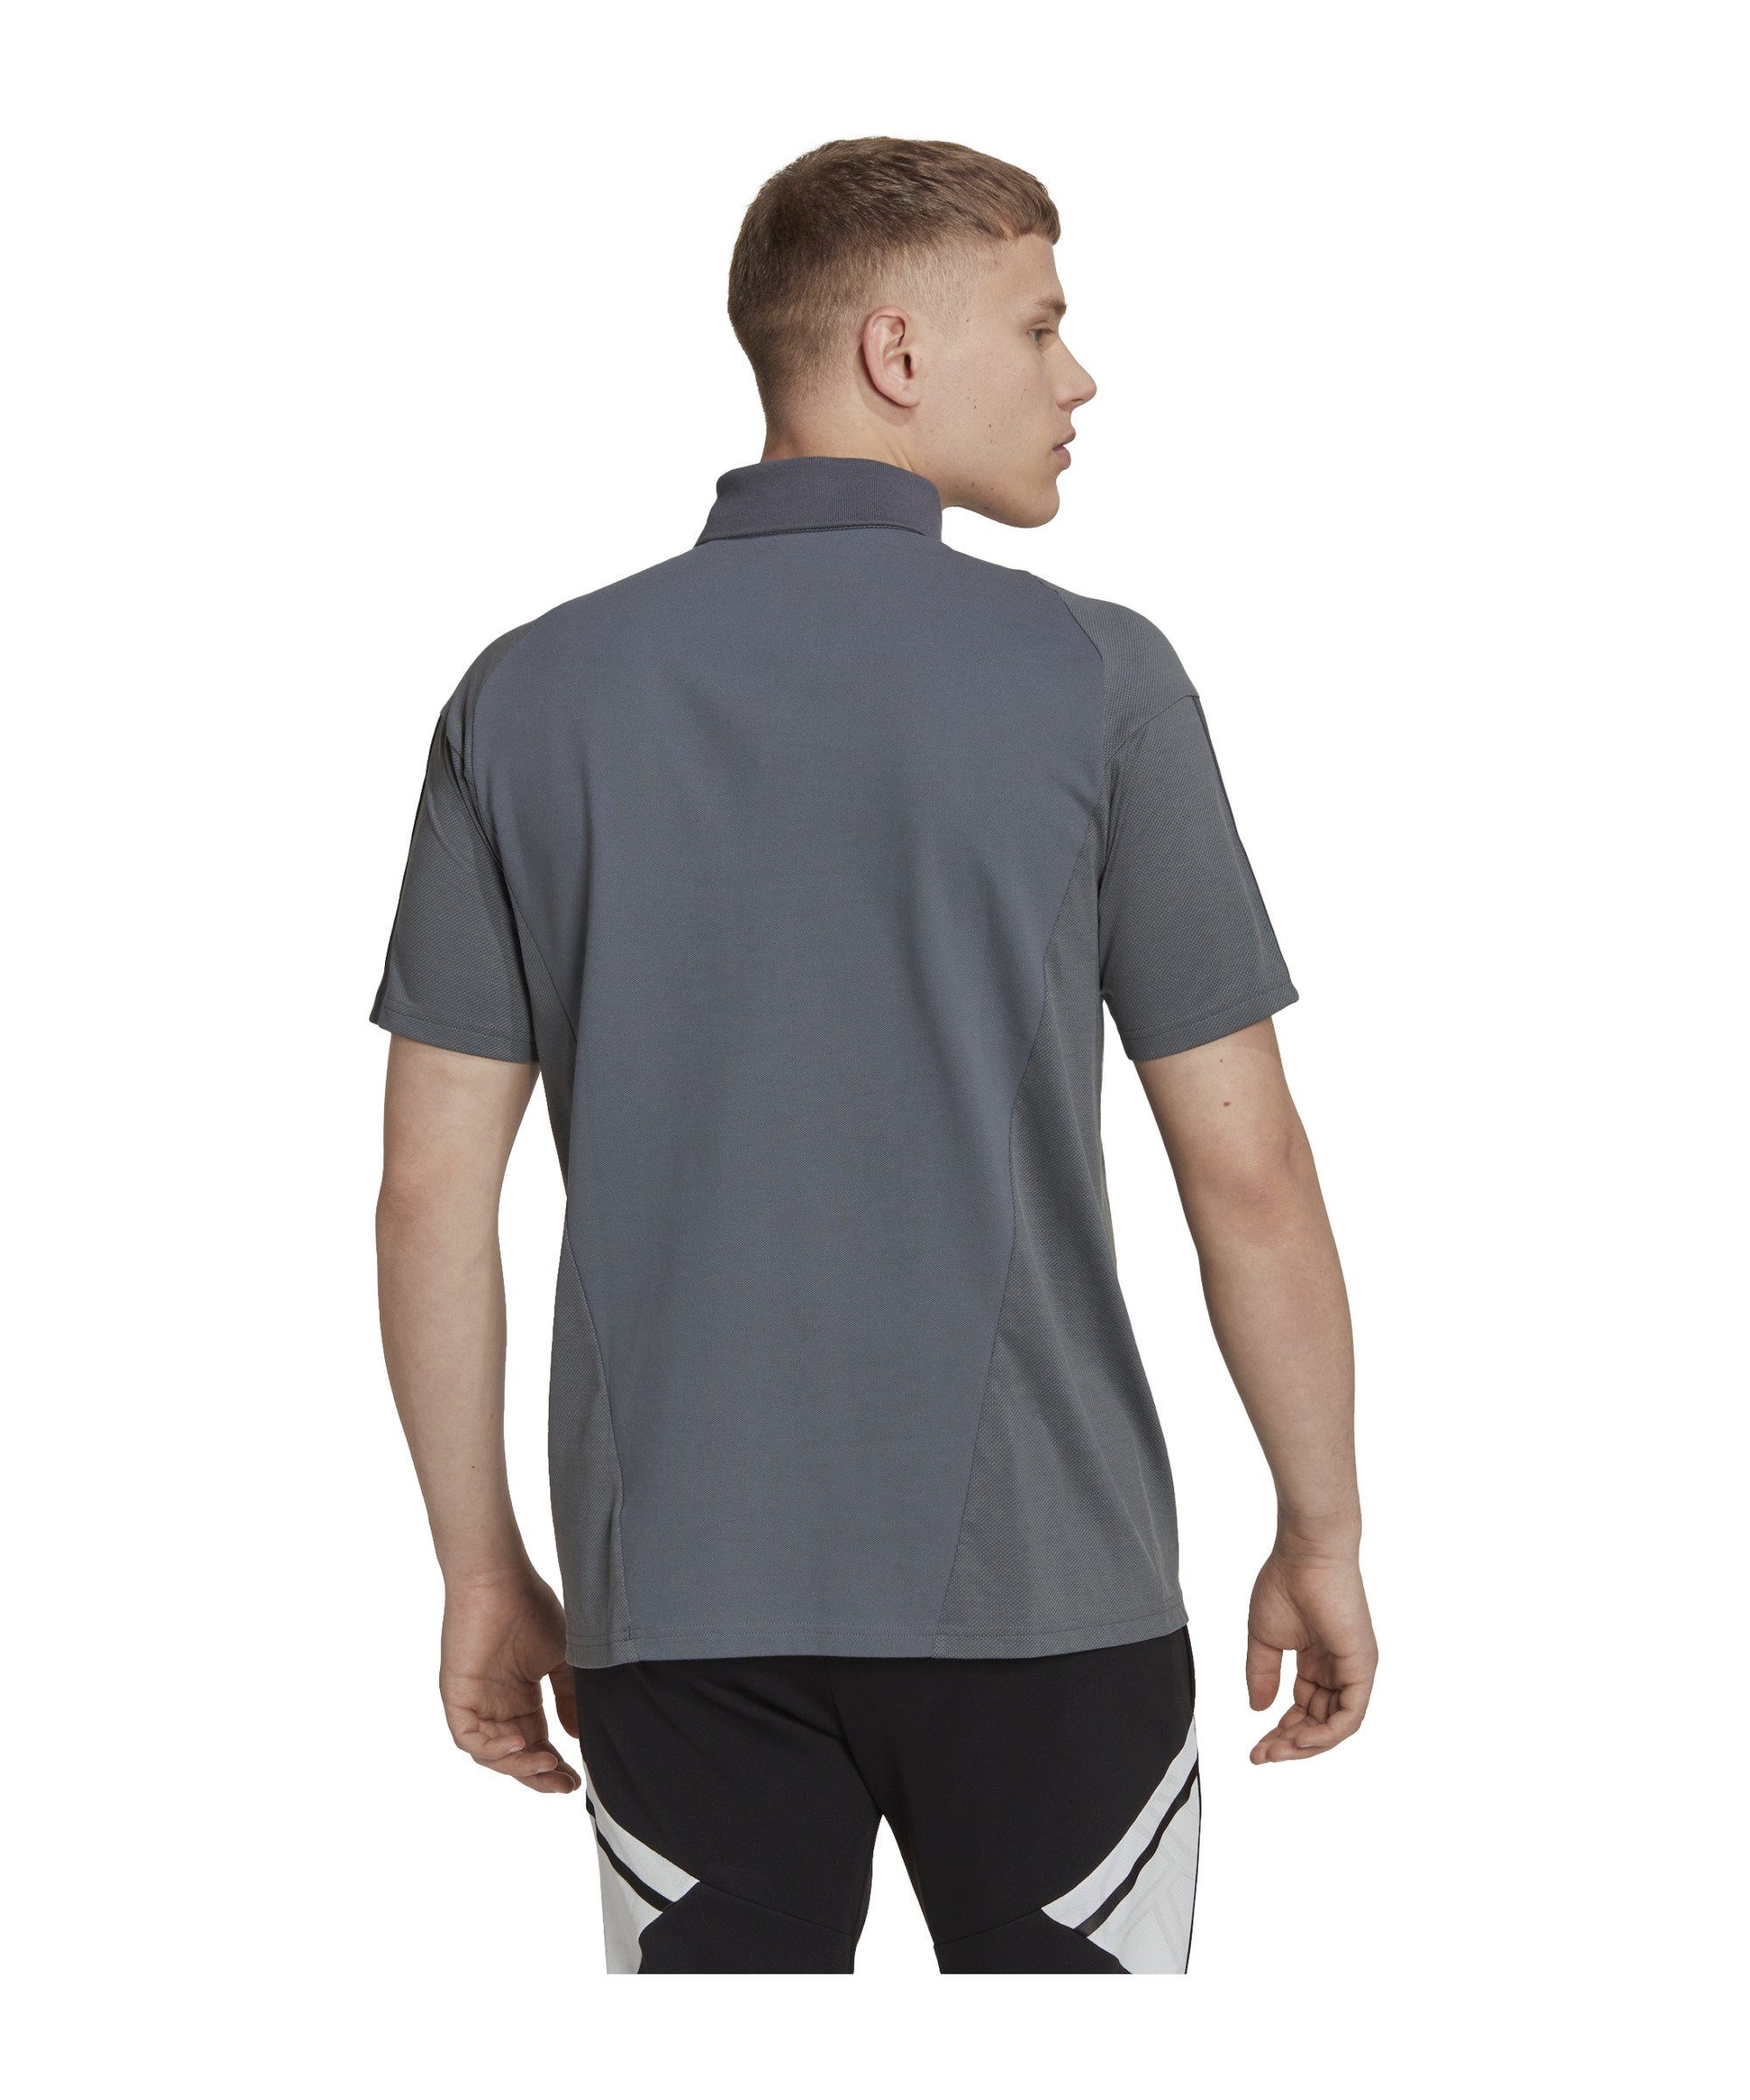 Poloshirt grau Tiro Competition Performance default T-Shirt adidas 23